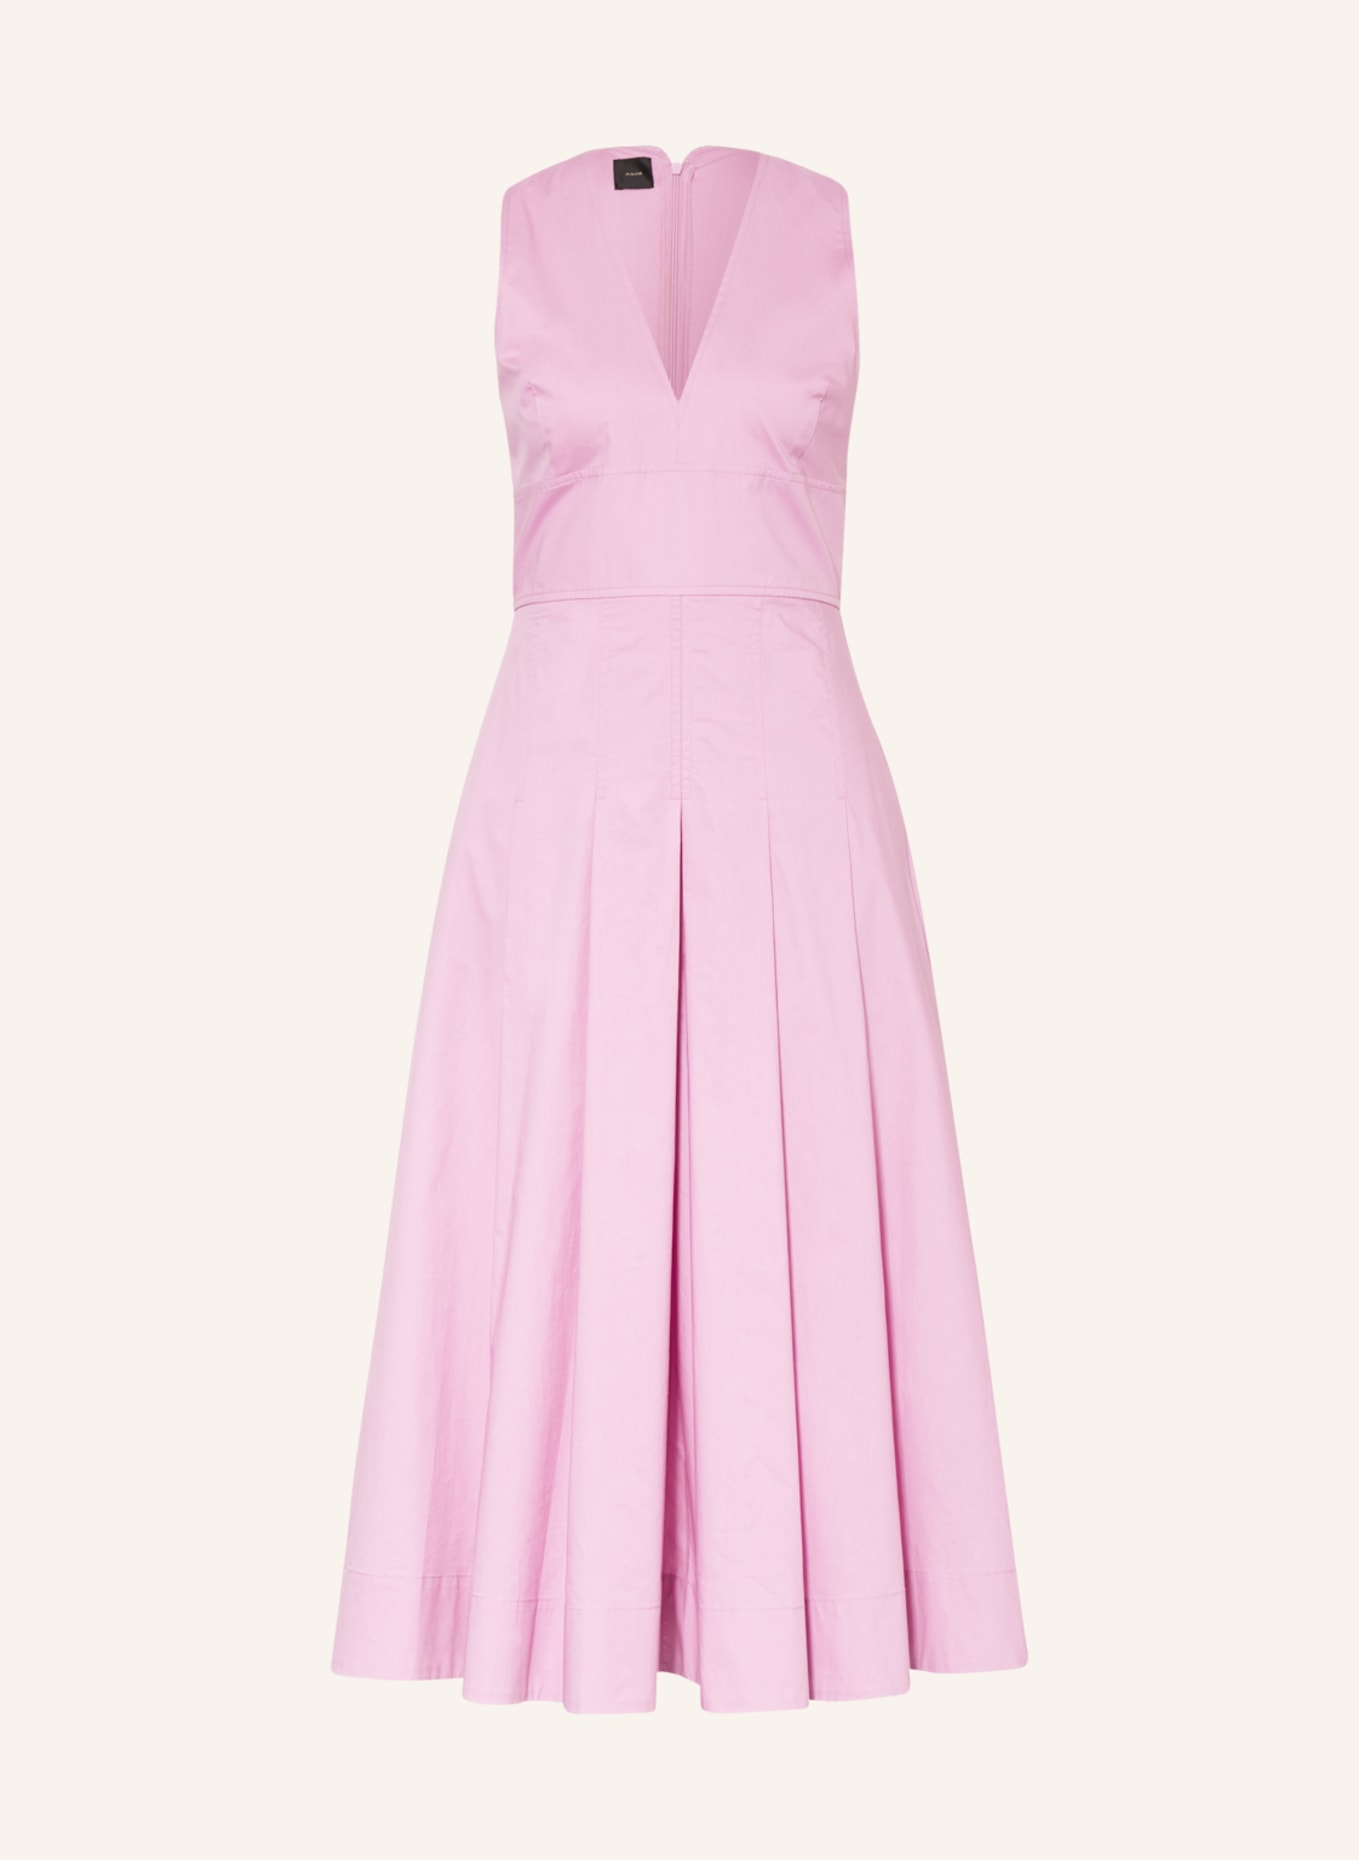 PINKO Kleid ADORATO, Farbe: ROSA (Bild 1)